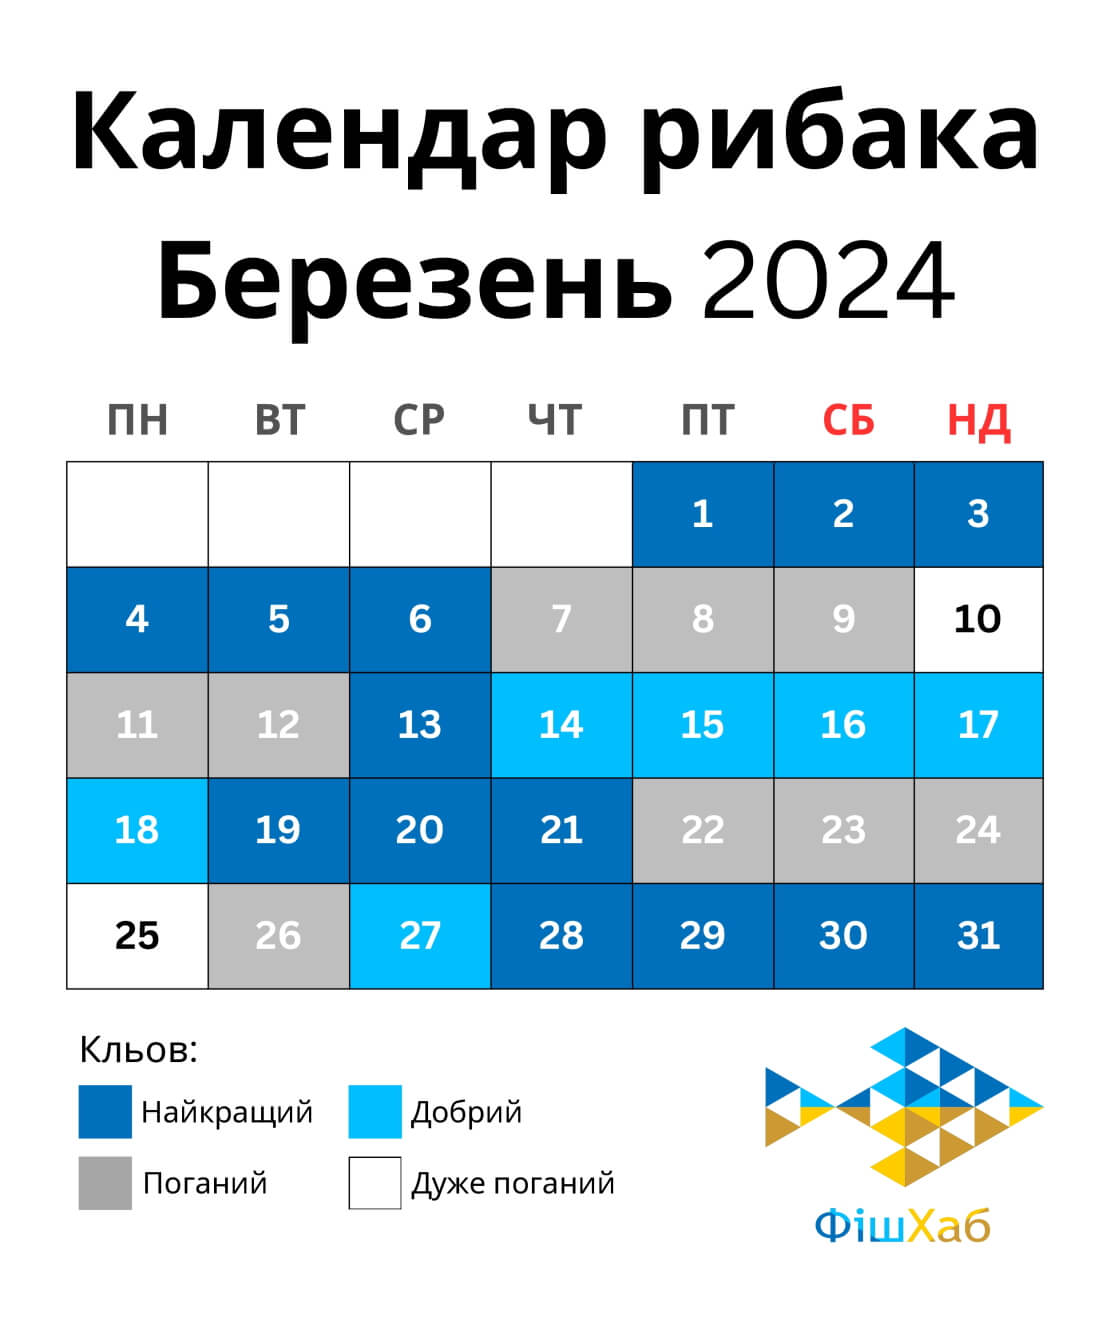 Календар рибака на березень 2024